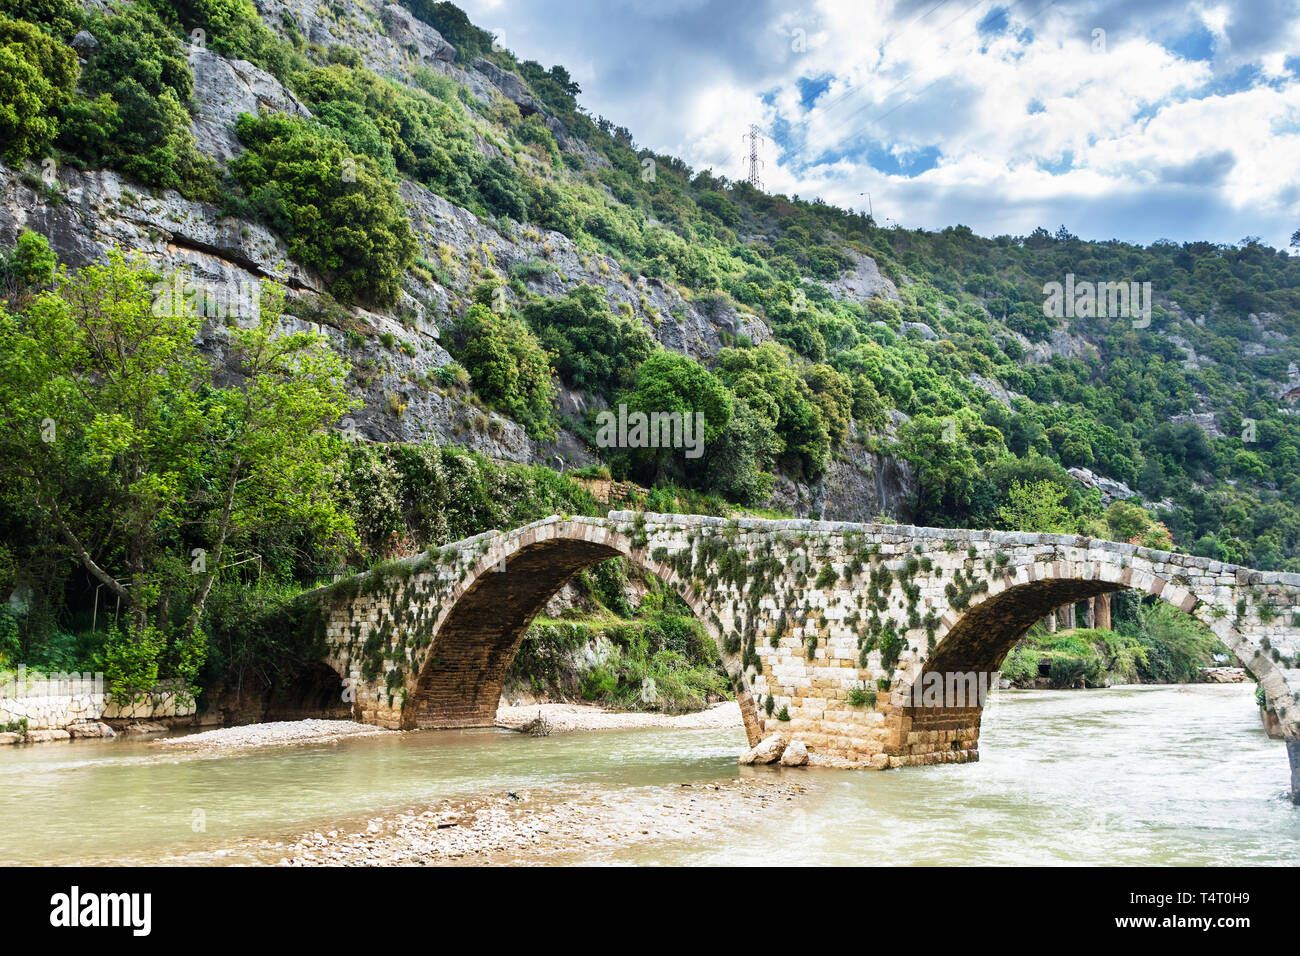 Old Mamluk stone bridge in Nahr el Kalb, Lebanon Stock Photo